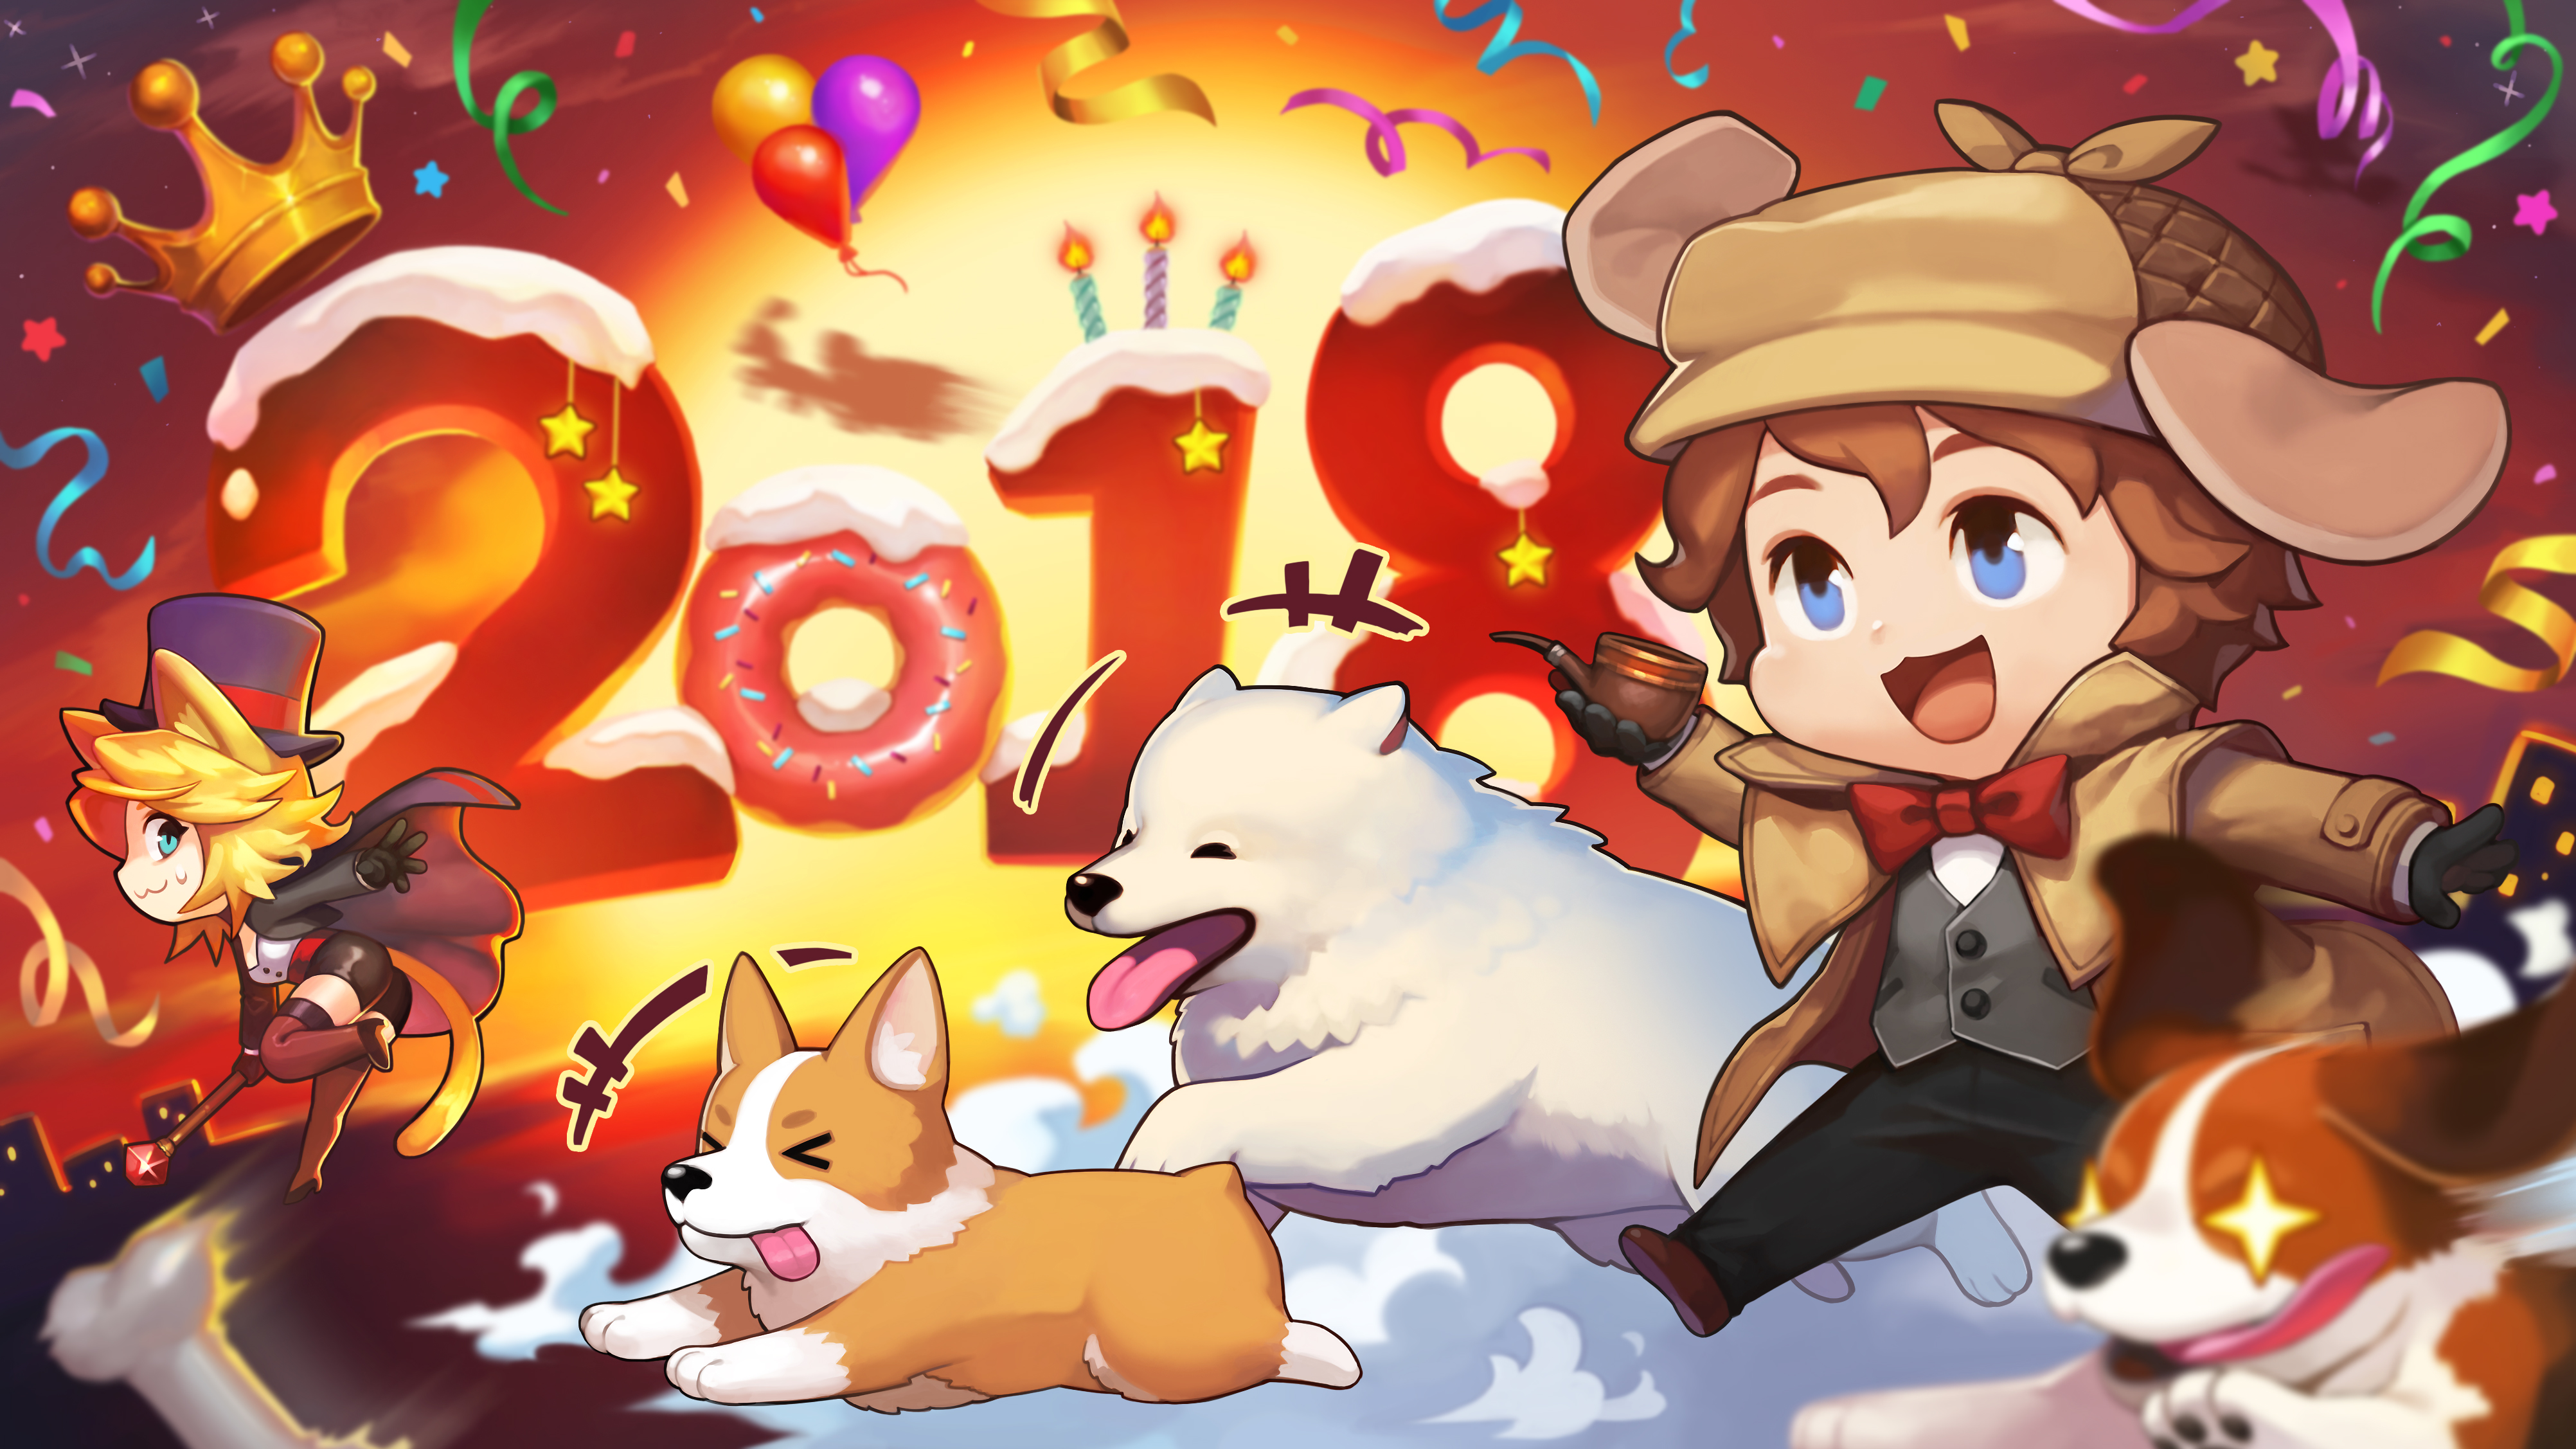 New Year 2018 Wallpaper - Cartoon , HD Wallpaper & Backgrounds